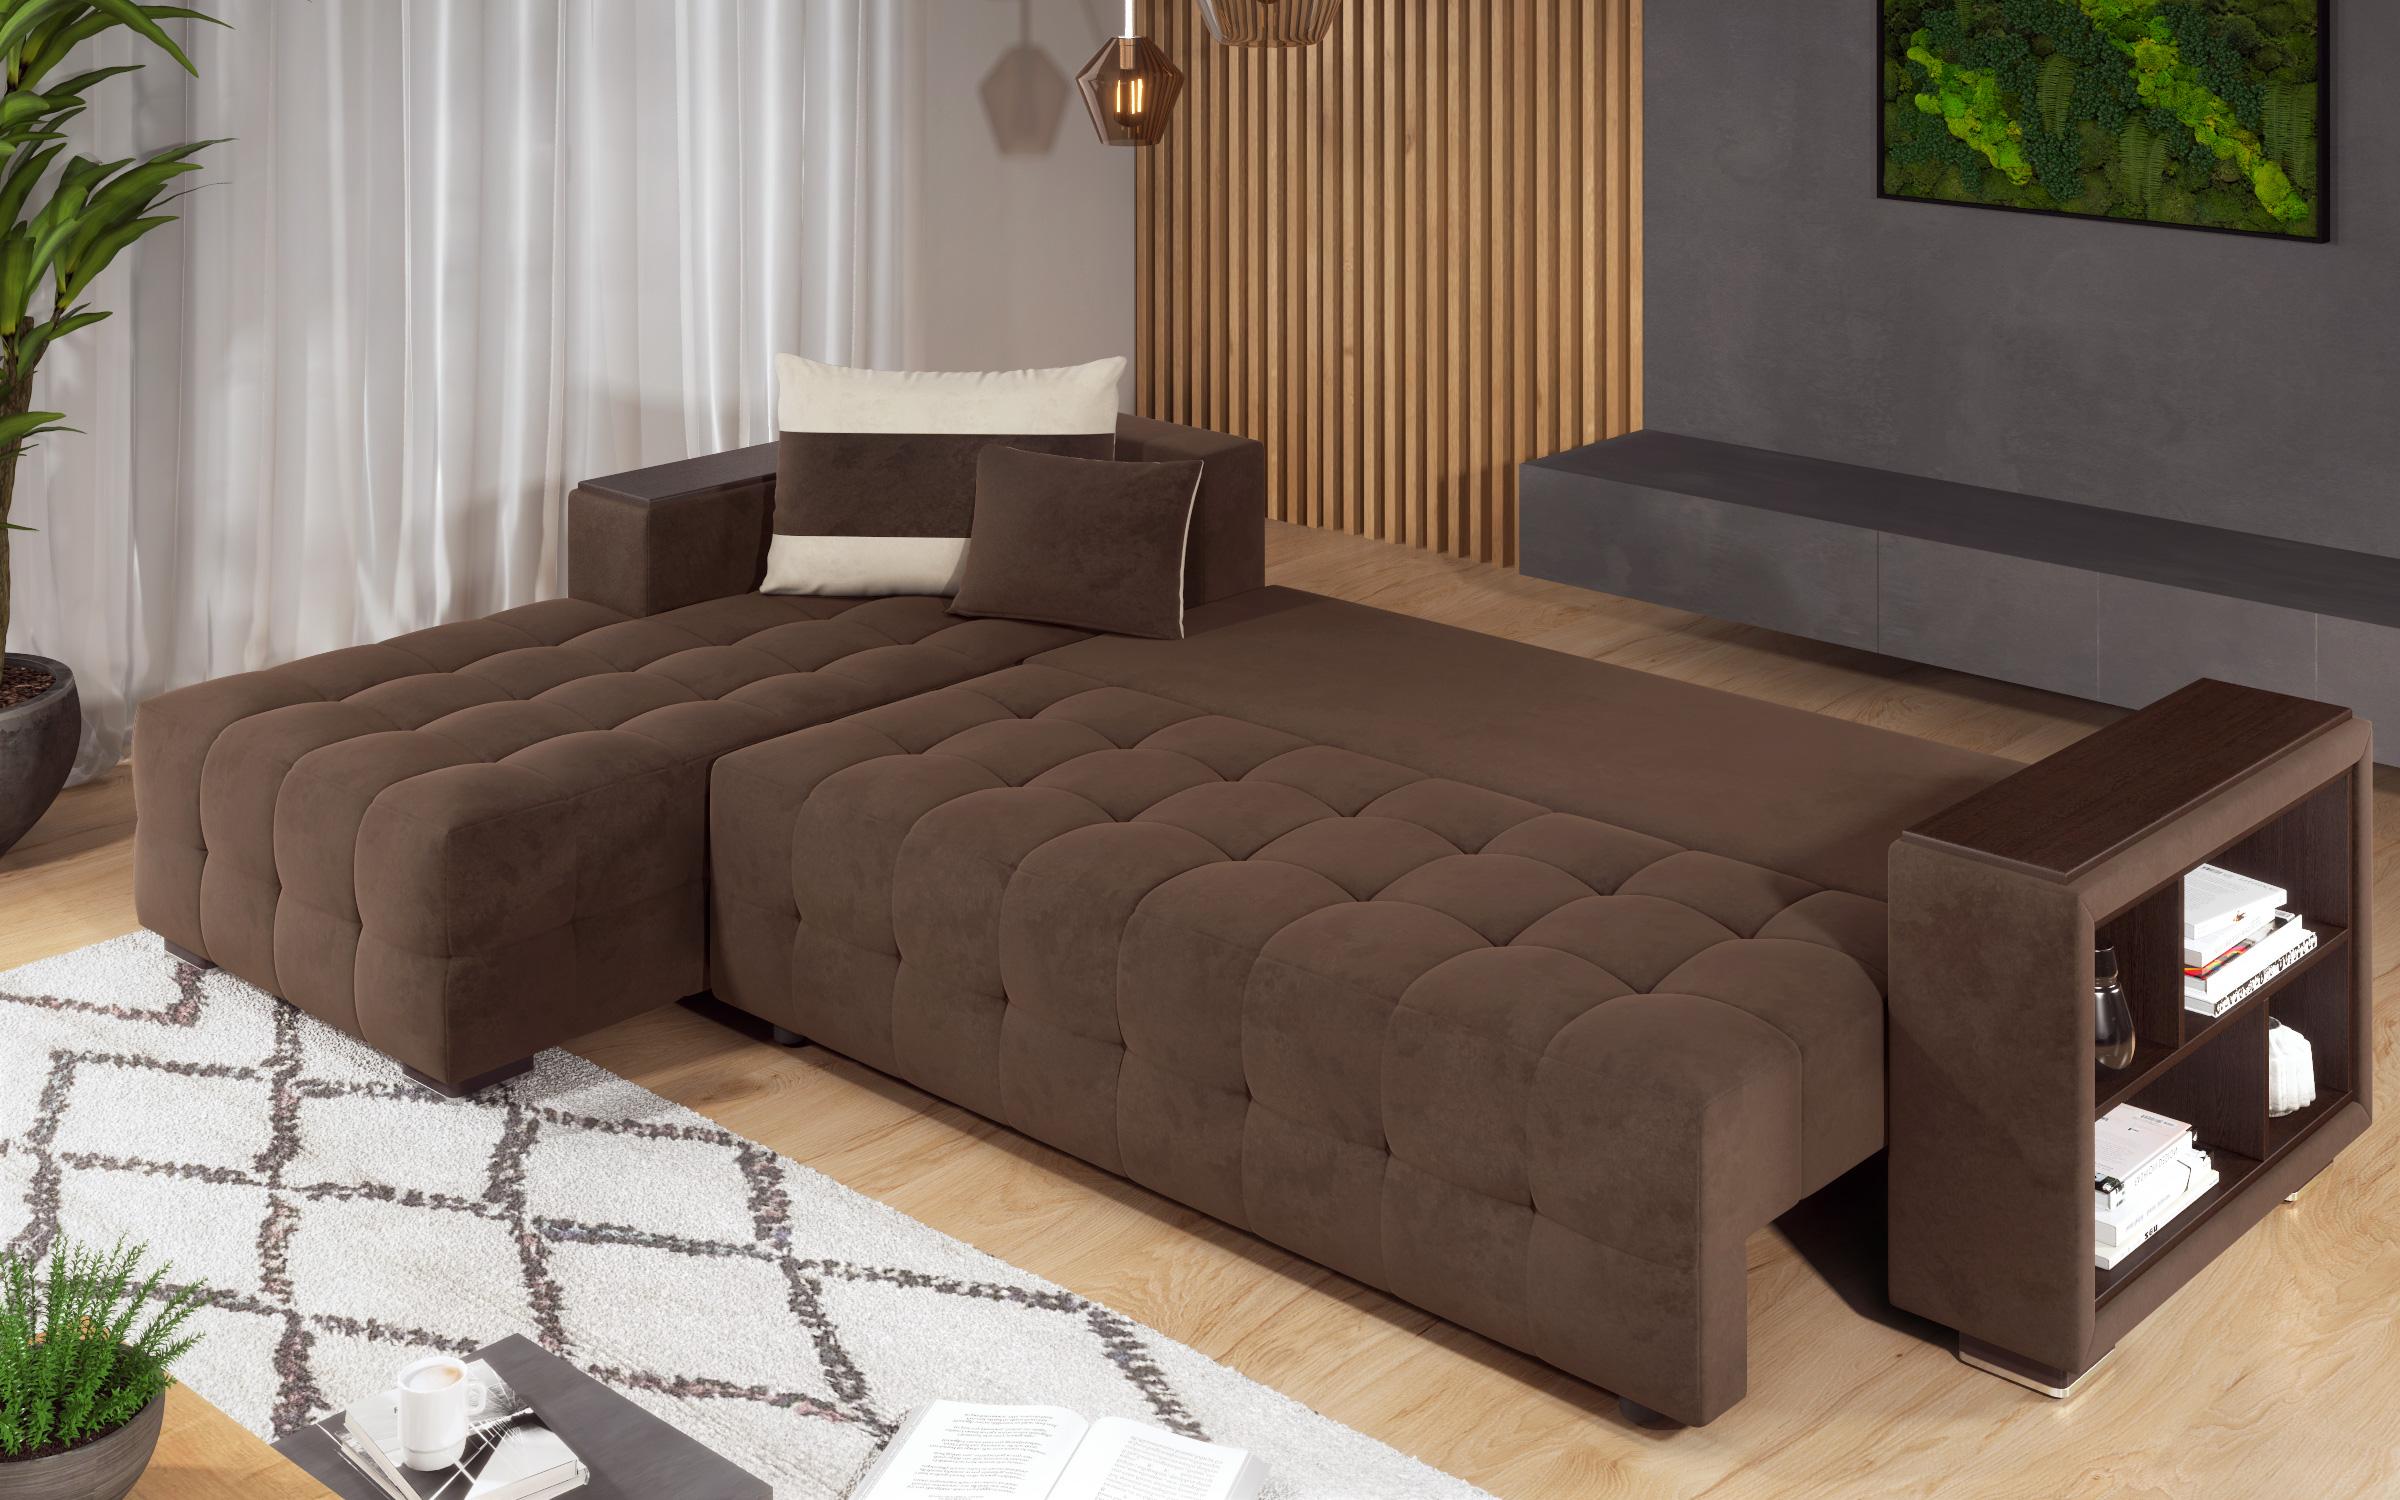 Γωνιακός καναπές - κρεβάτι με ανάκλιντρο και μπράτσο μίνι ραφιέρα Melvin, σκούρο καφέ + ανοιχτό μπεζ  9